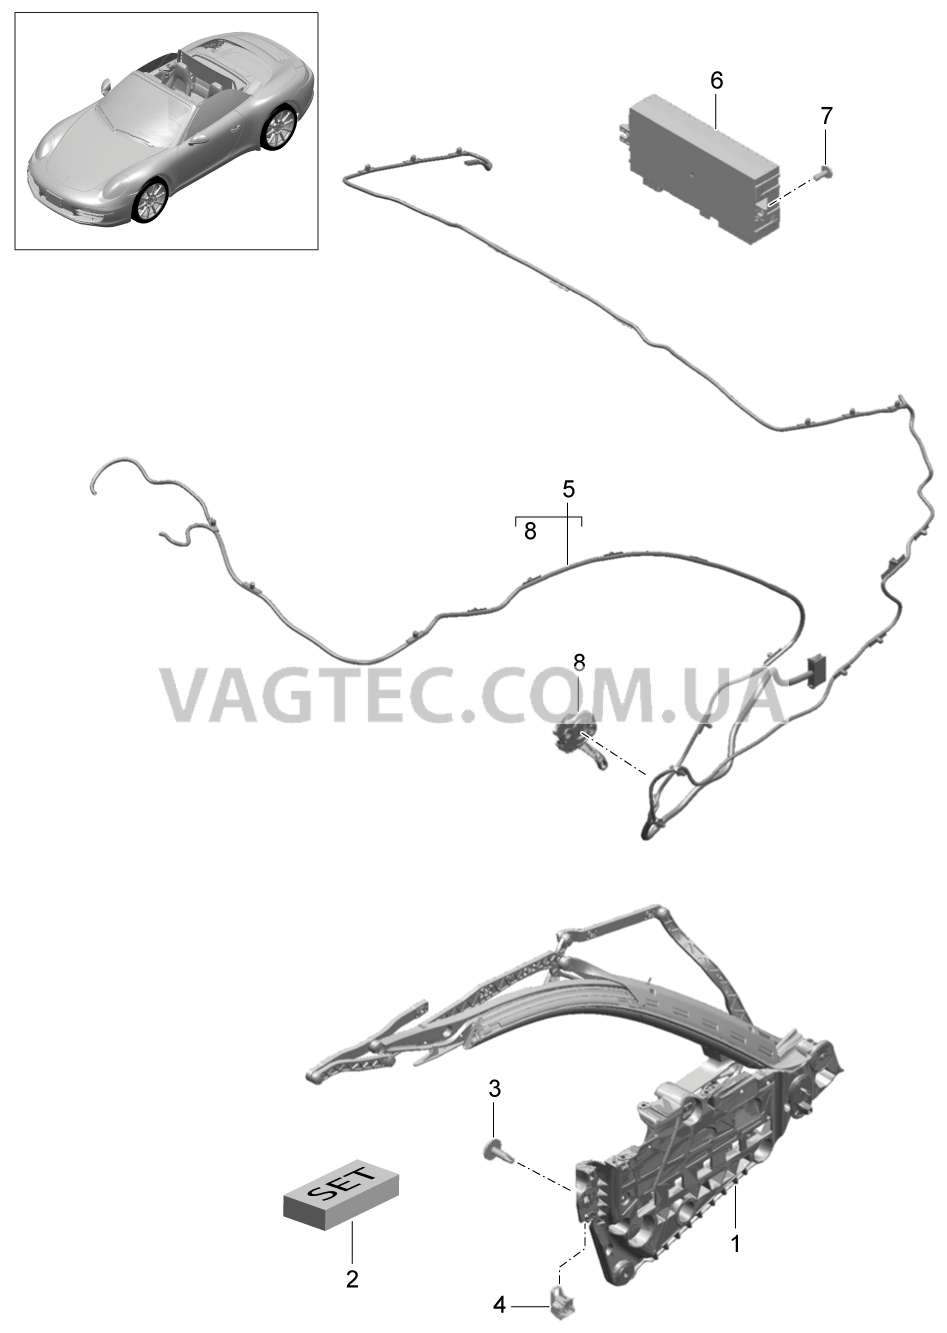 811-025 Каркас складного верха, Отдельные детали, боковой, и, Электродетали
						
						CABRIO для PORSCHE 911.Carrera 2012-2016